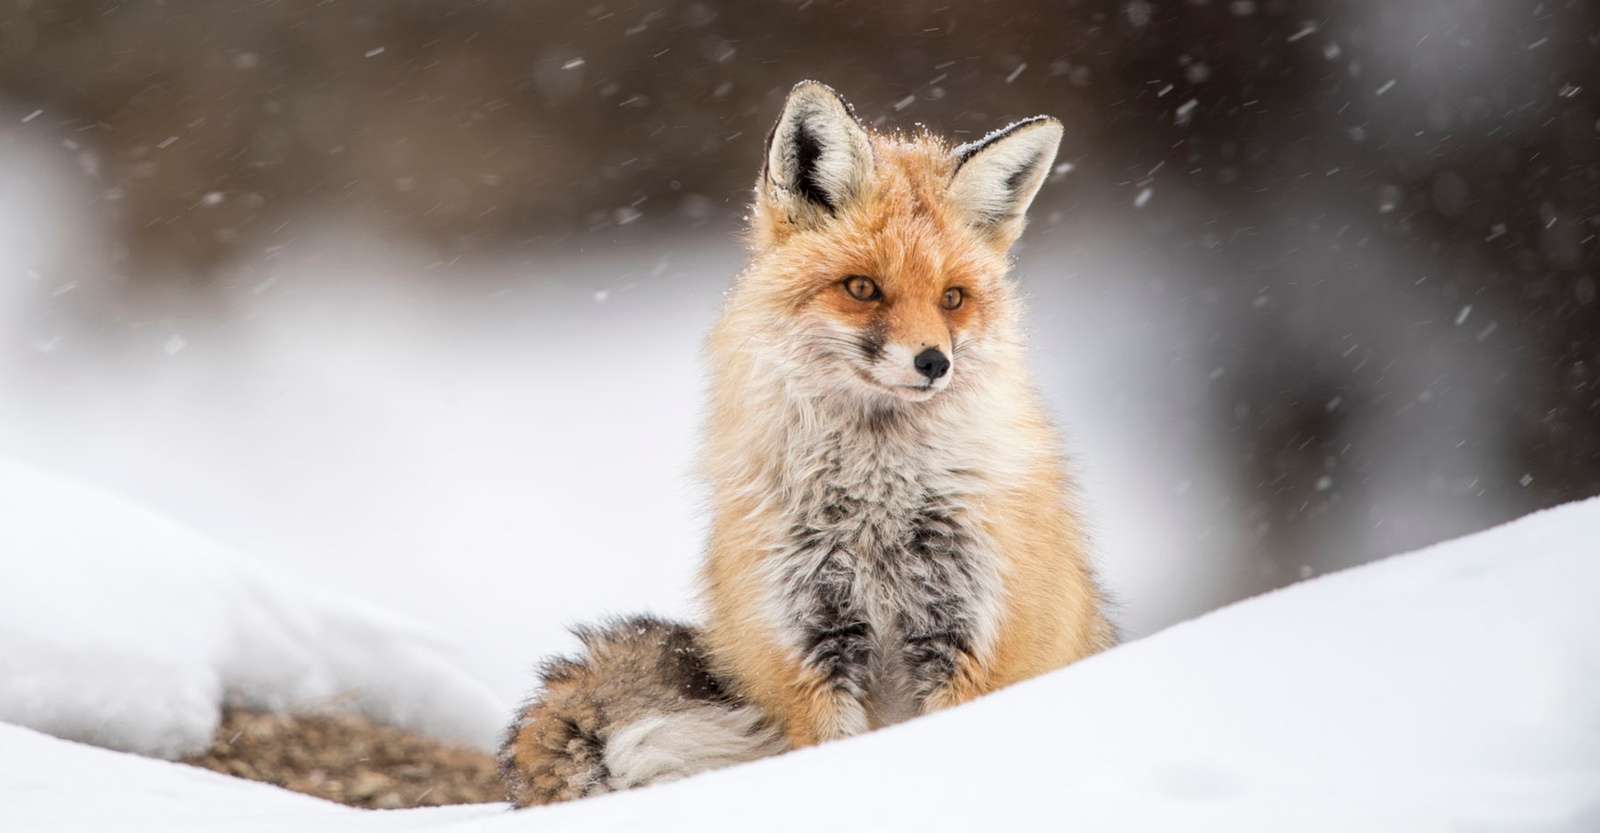 Red fox, Ladakh, India.